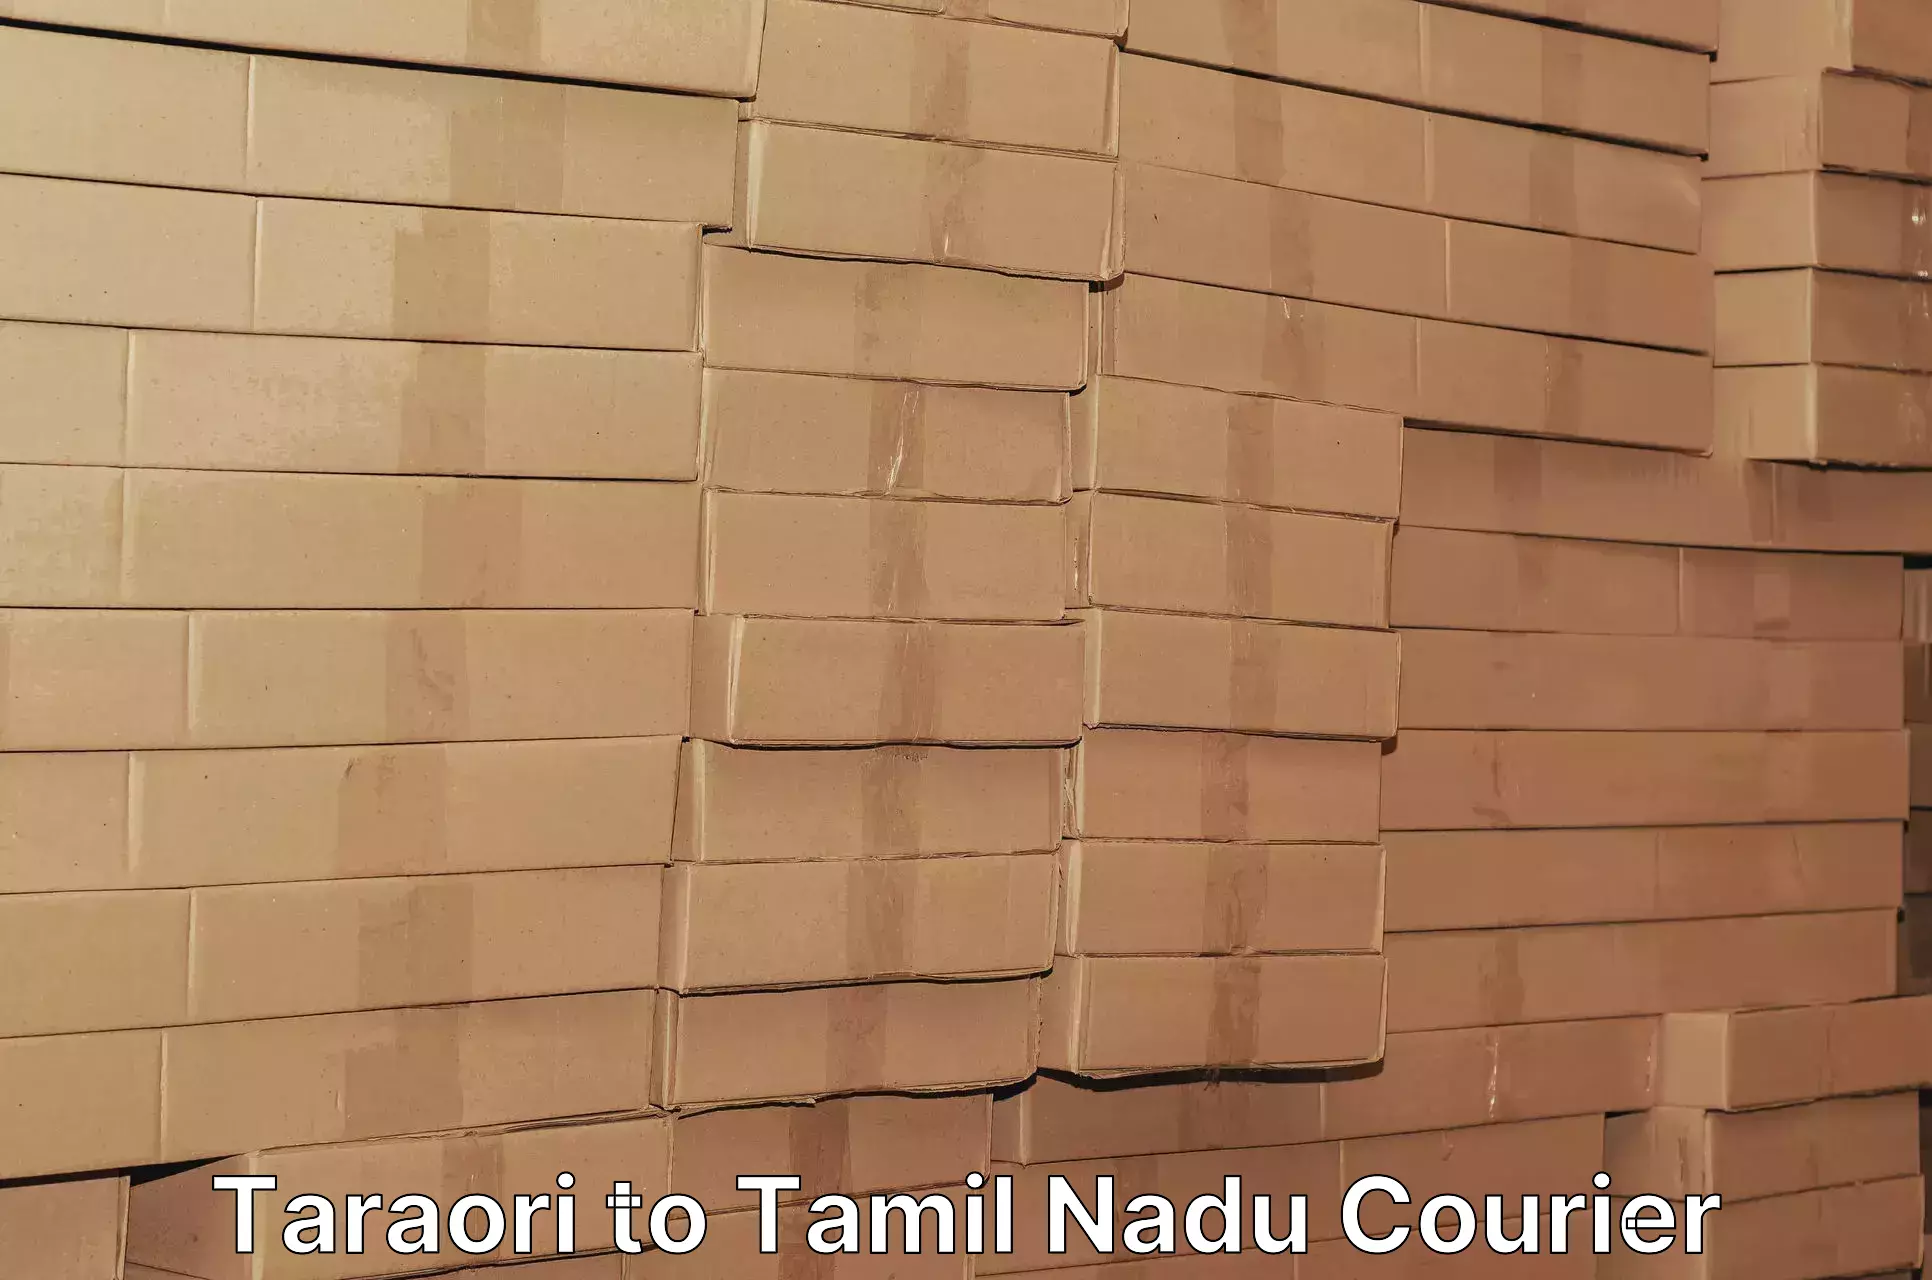 Courier service comparison Taraori to Ennore Port Chennai